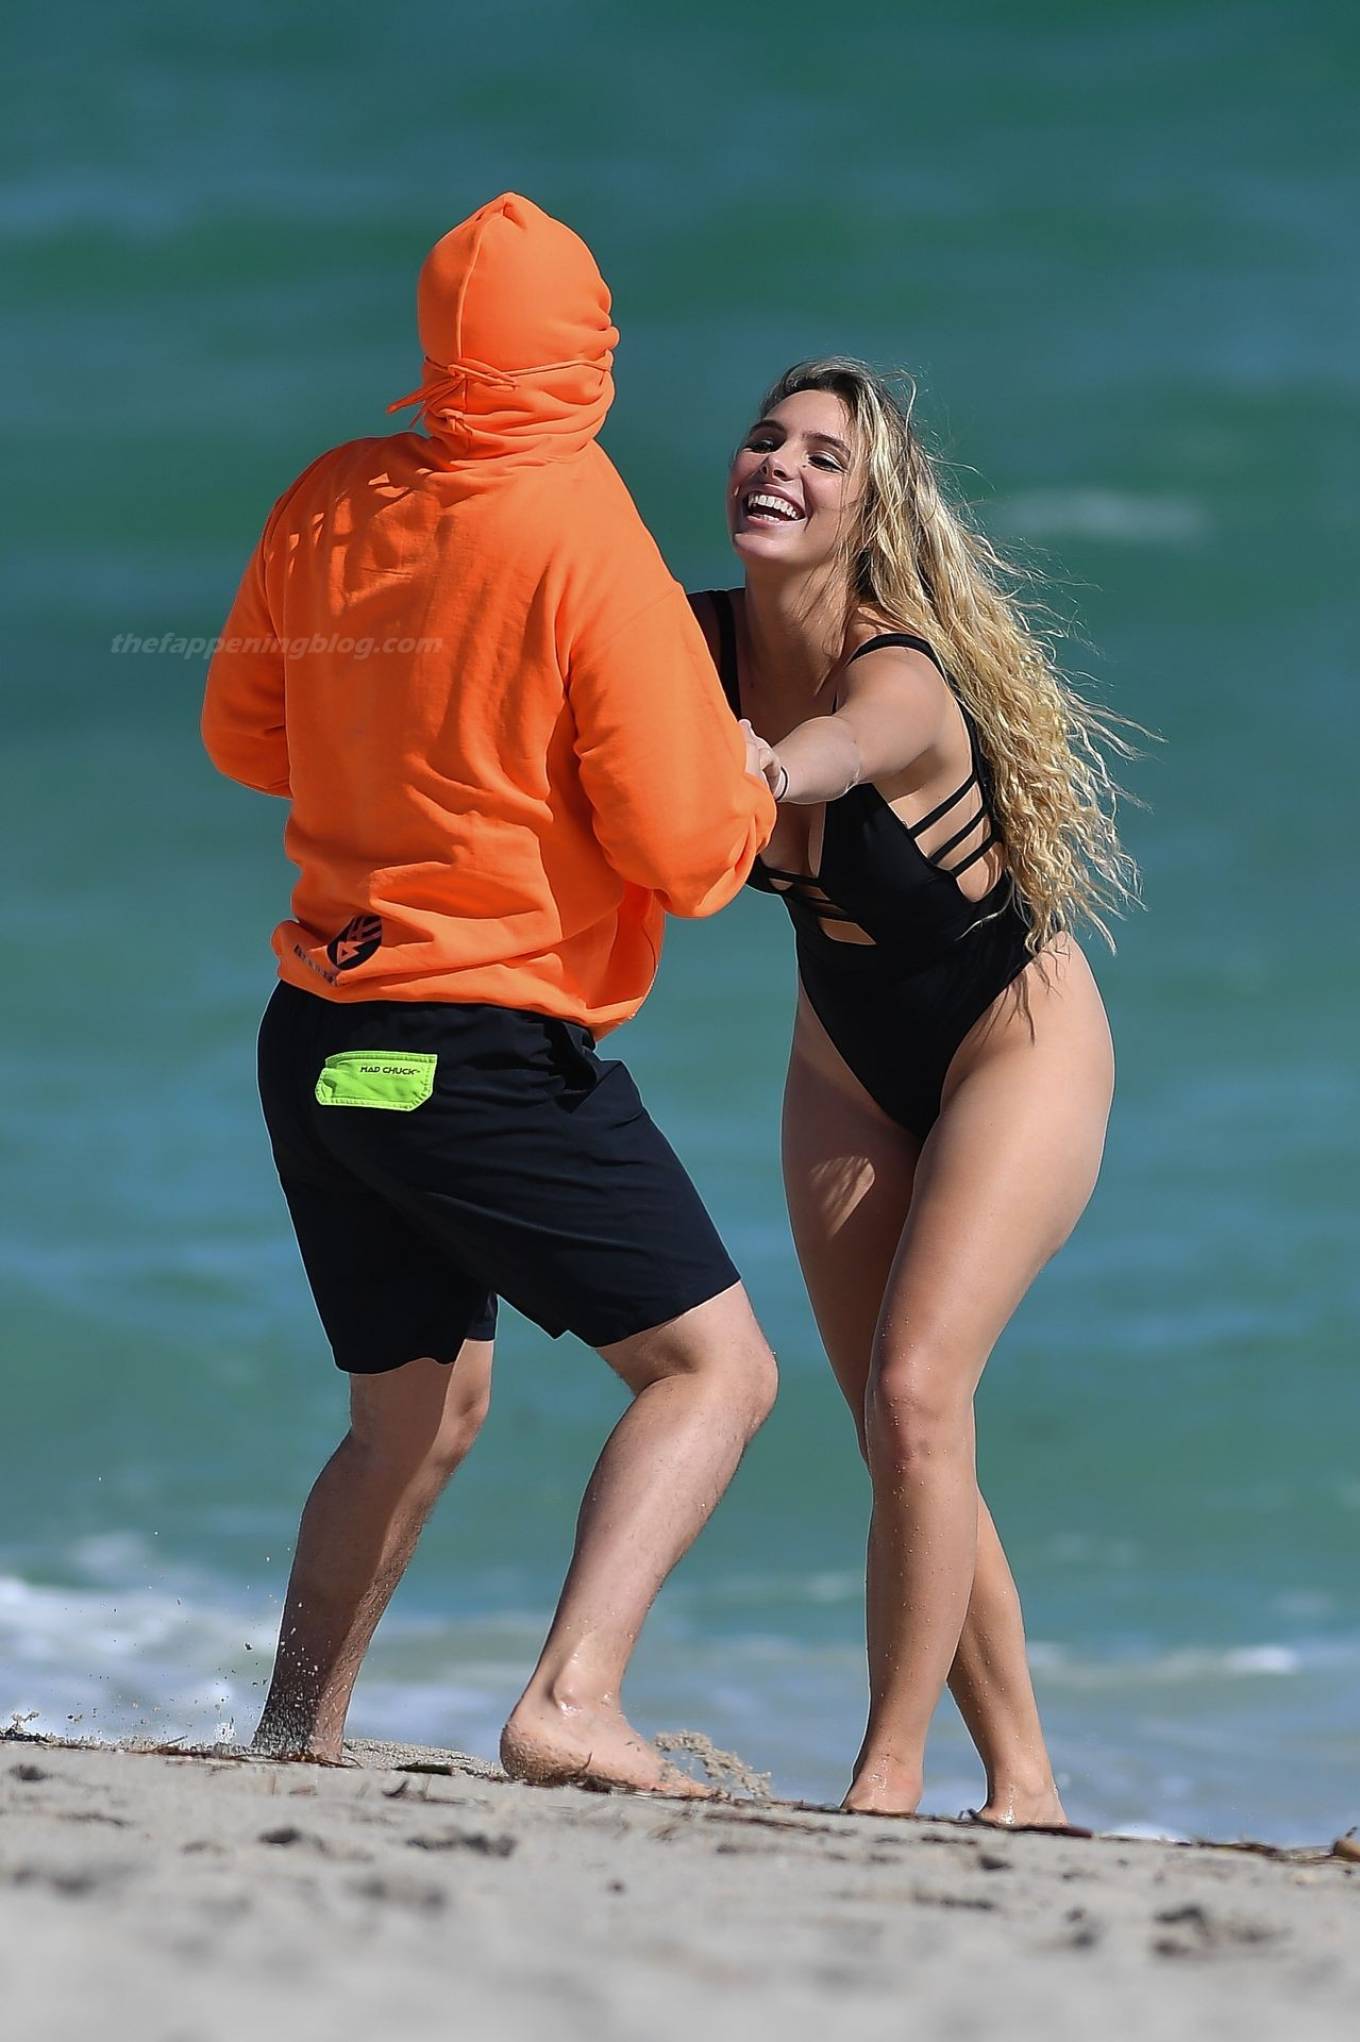 Lele Pons In A Bikini At A Beach In Miami Adds Gotceleb